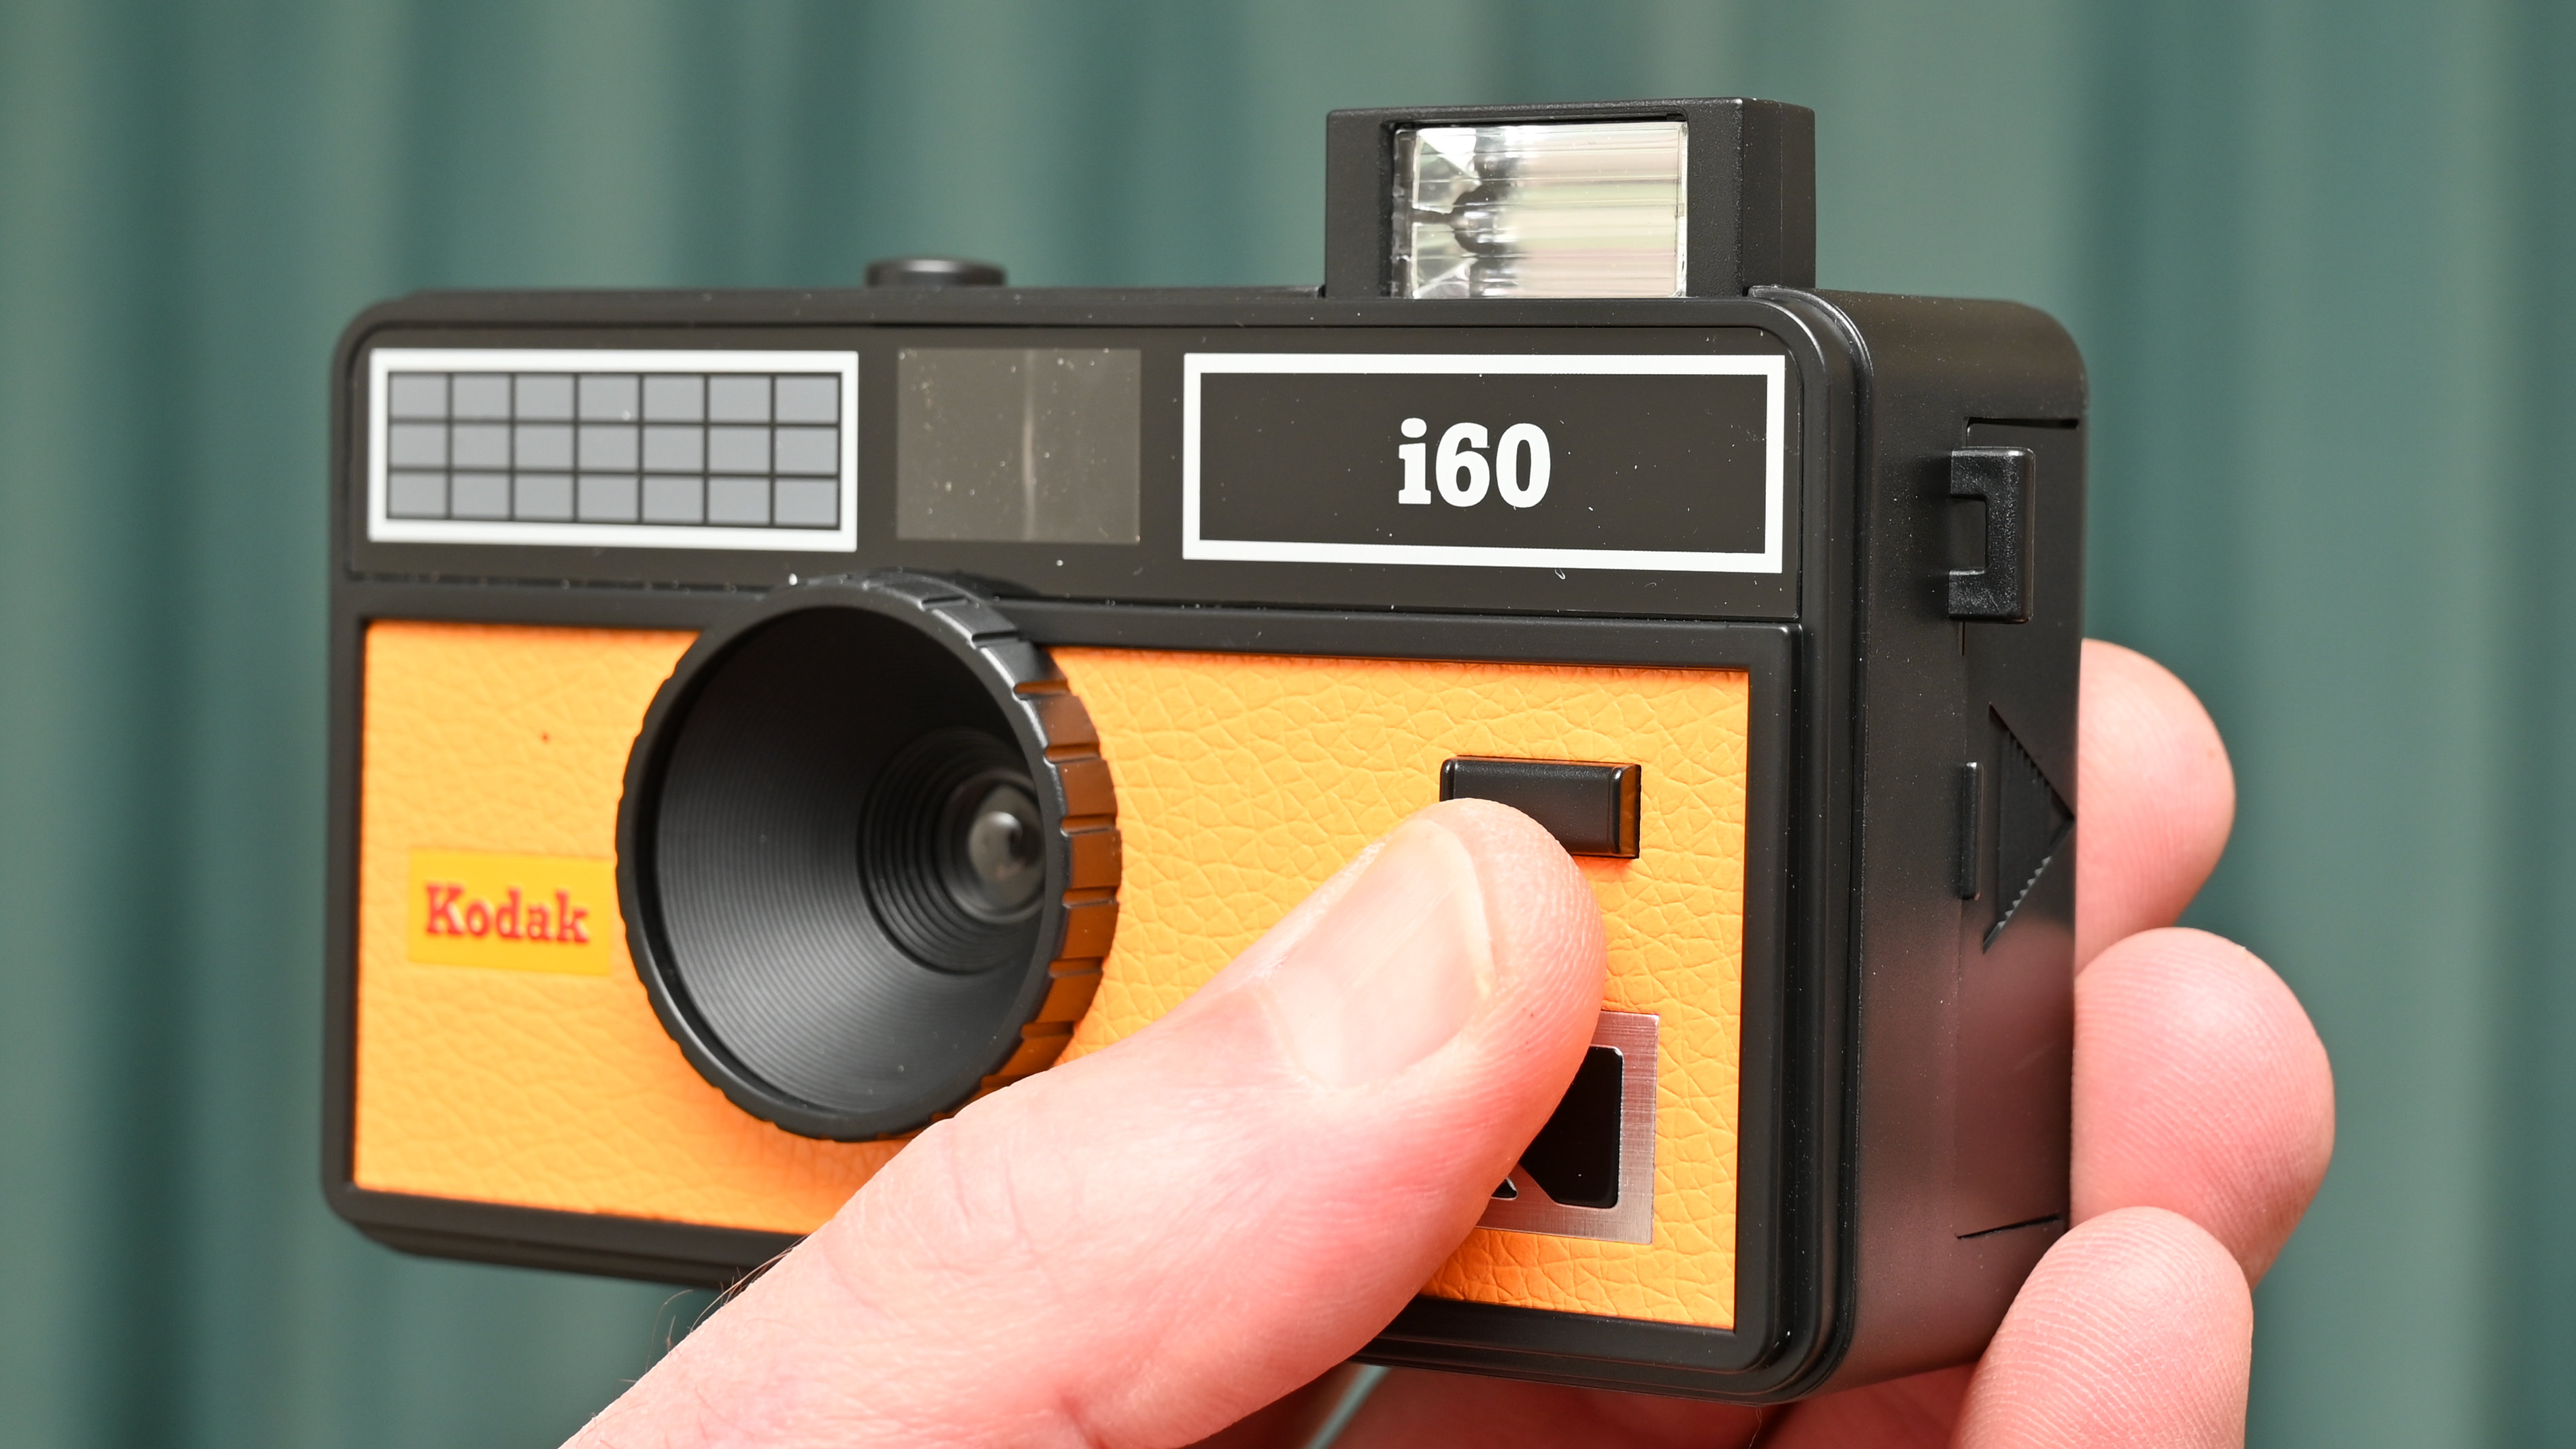 كوداك i60 كاميرا فيلم قابلة لإعادة التحميل